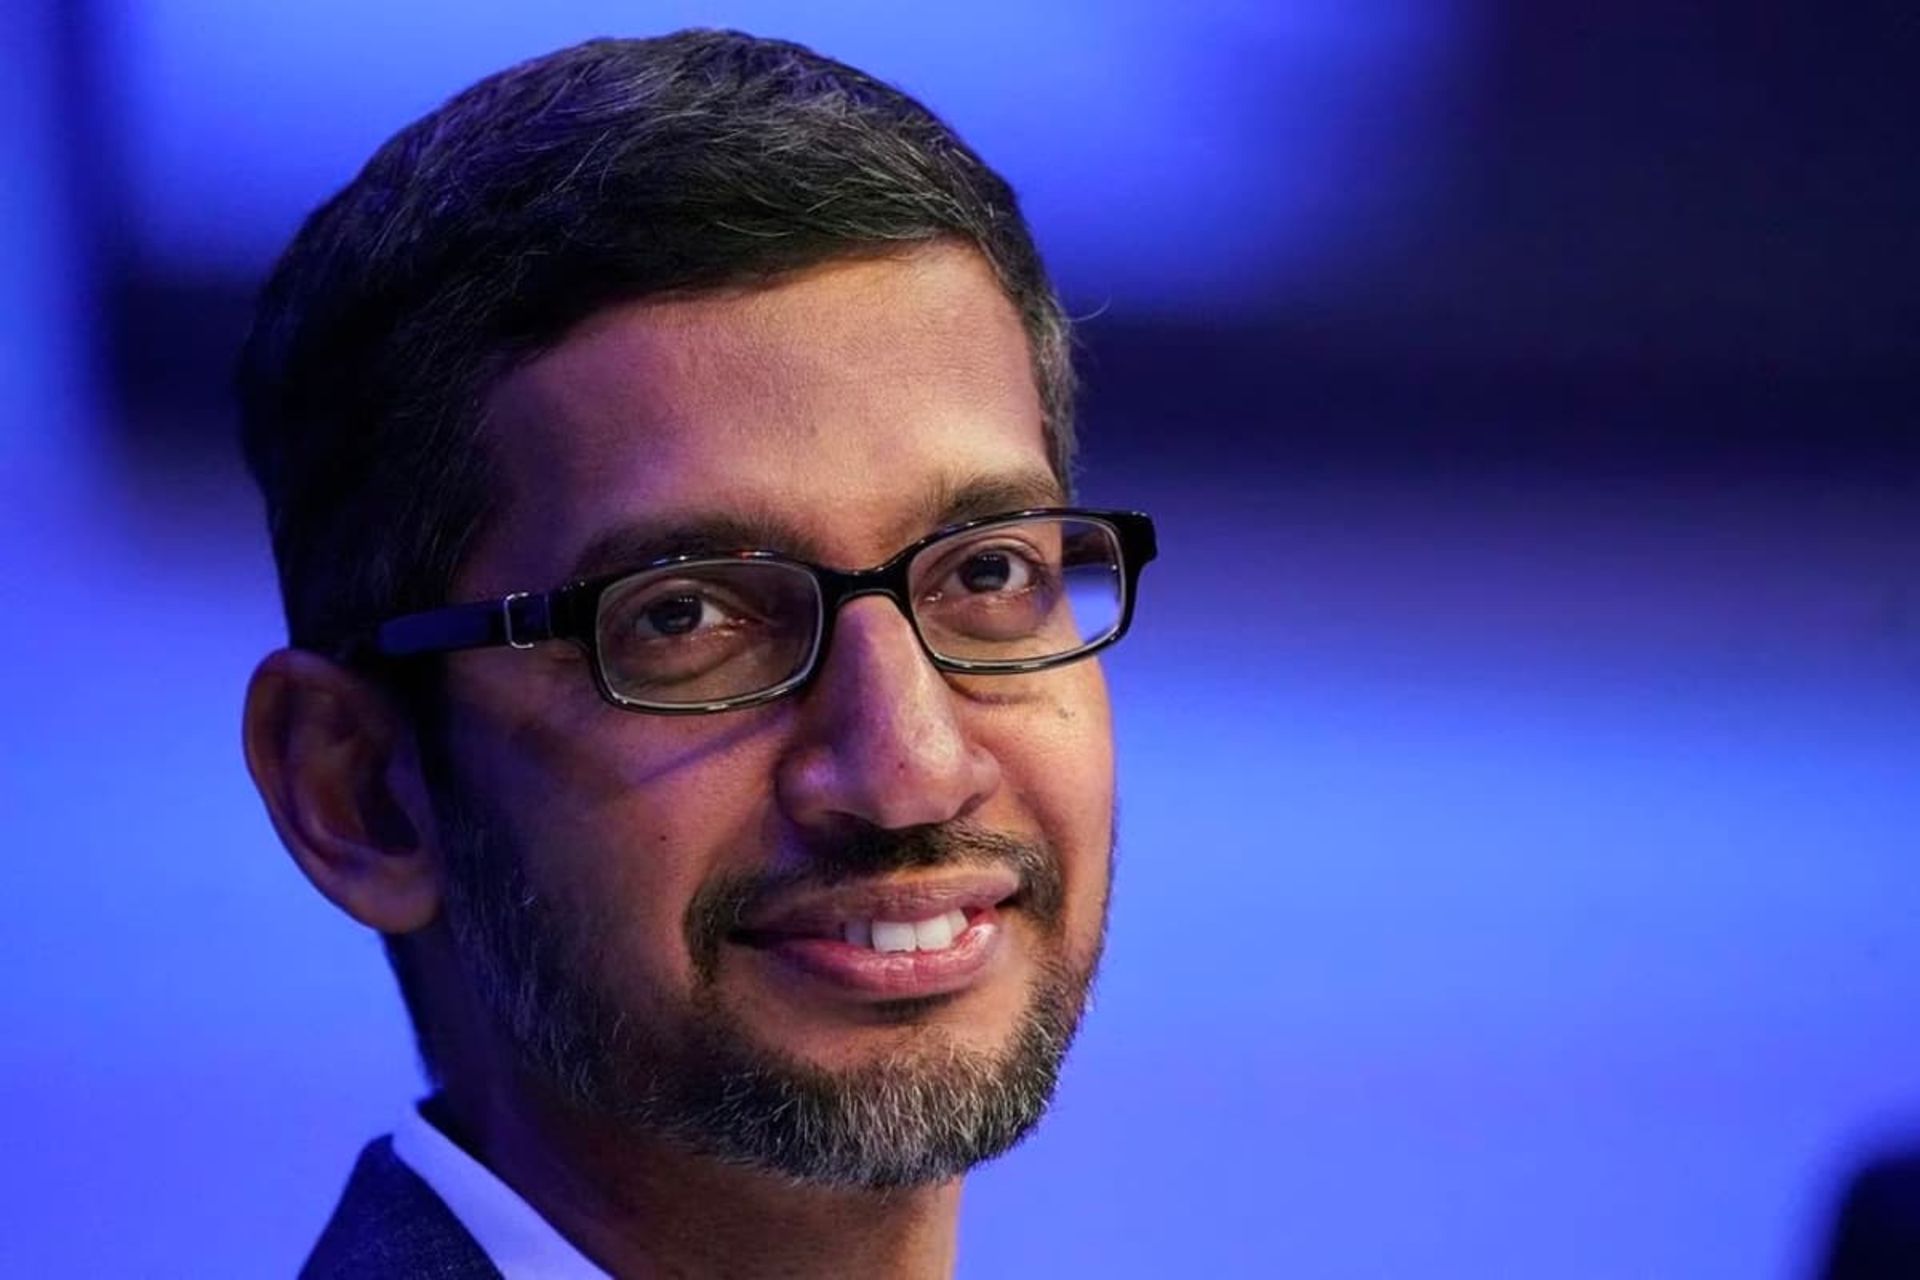 لبخند سوندار پیچای / Sundar Pichai مدیرعامل گوگل